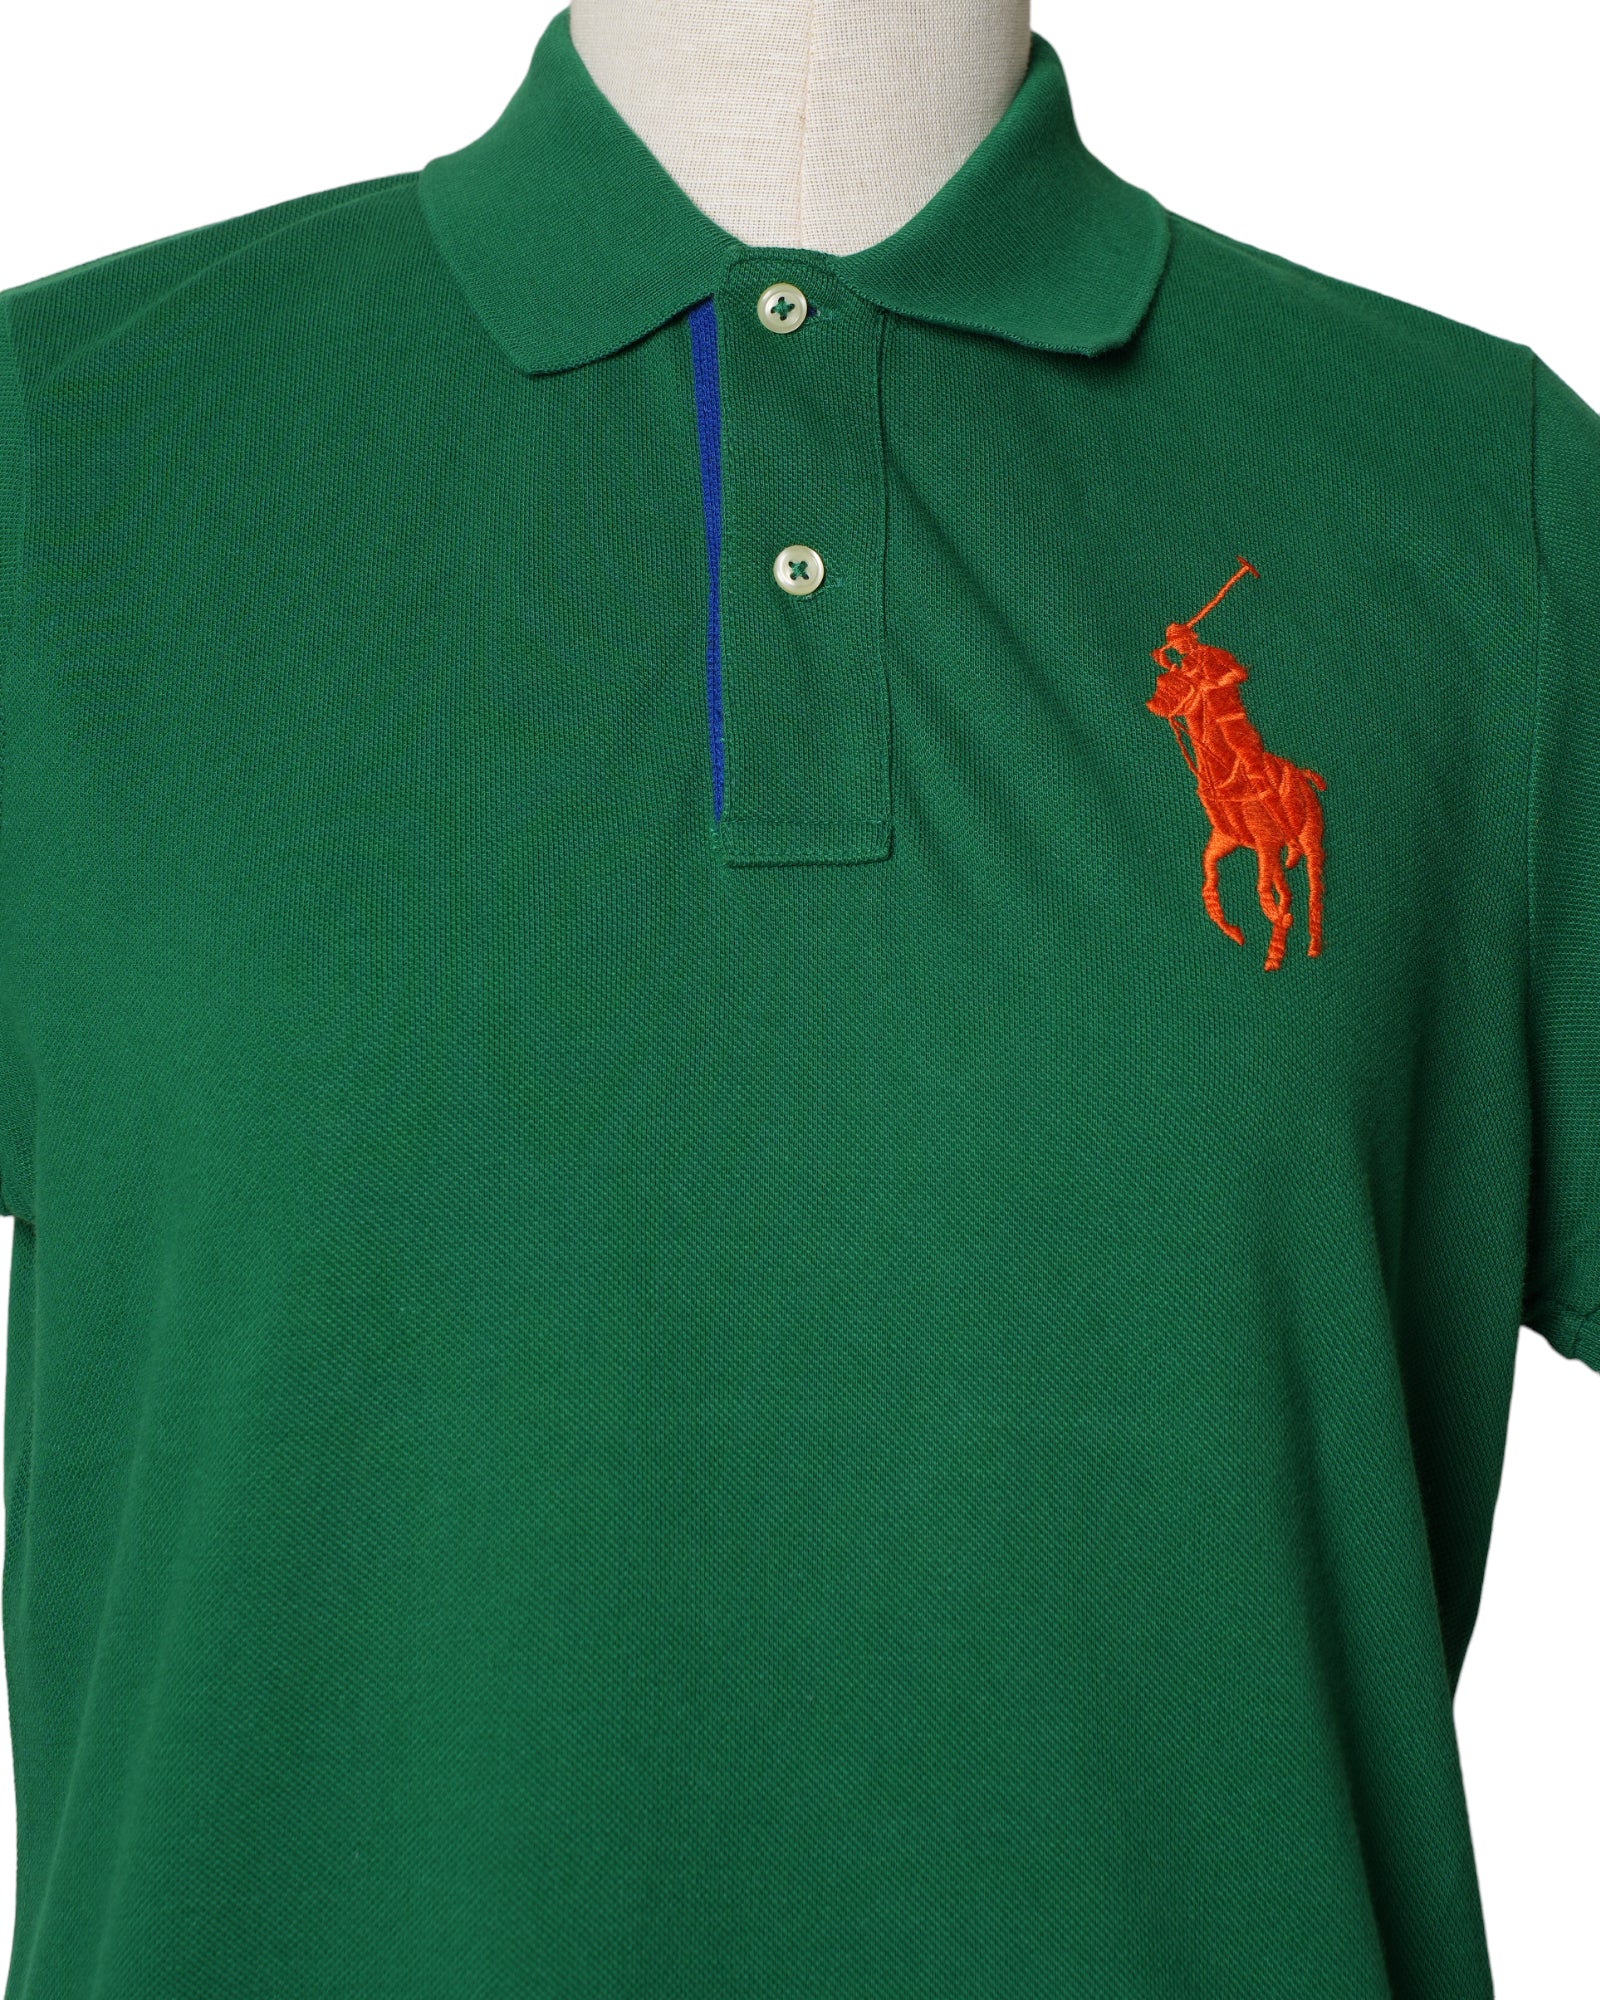 Polo Ralph Lauren Green Knit Short Sleeve T-Shirt